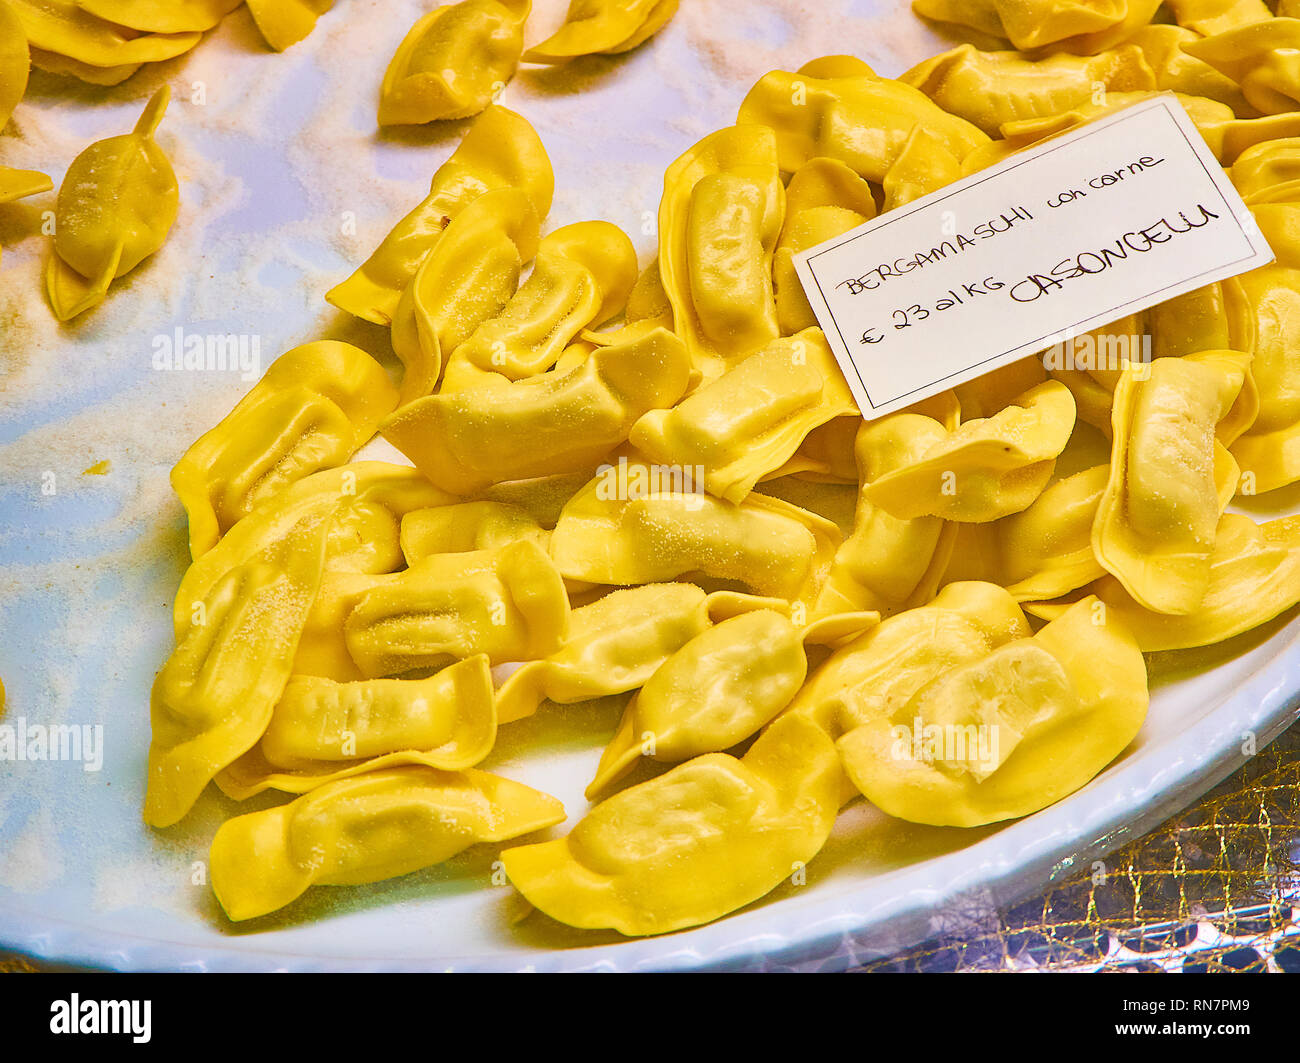 Hausgemachten Casoncelli Fleisch Füllungen für Verkauf in einem Shop. Frisch gefüllte Teigwaren, die typisch für die kulinarische Tradition der Lombardei. Italien. Stockfoto